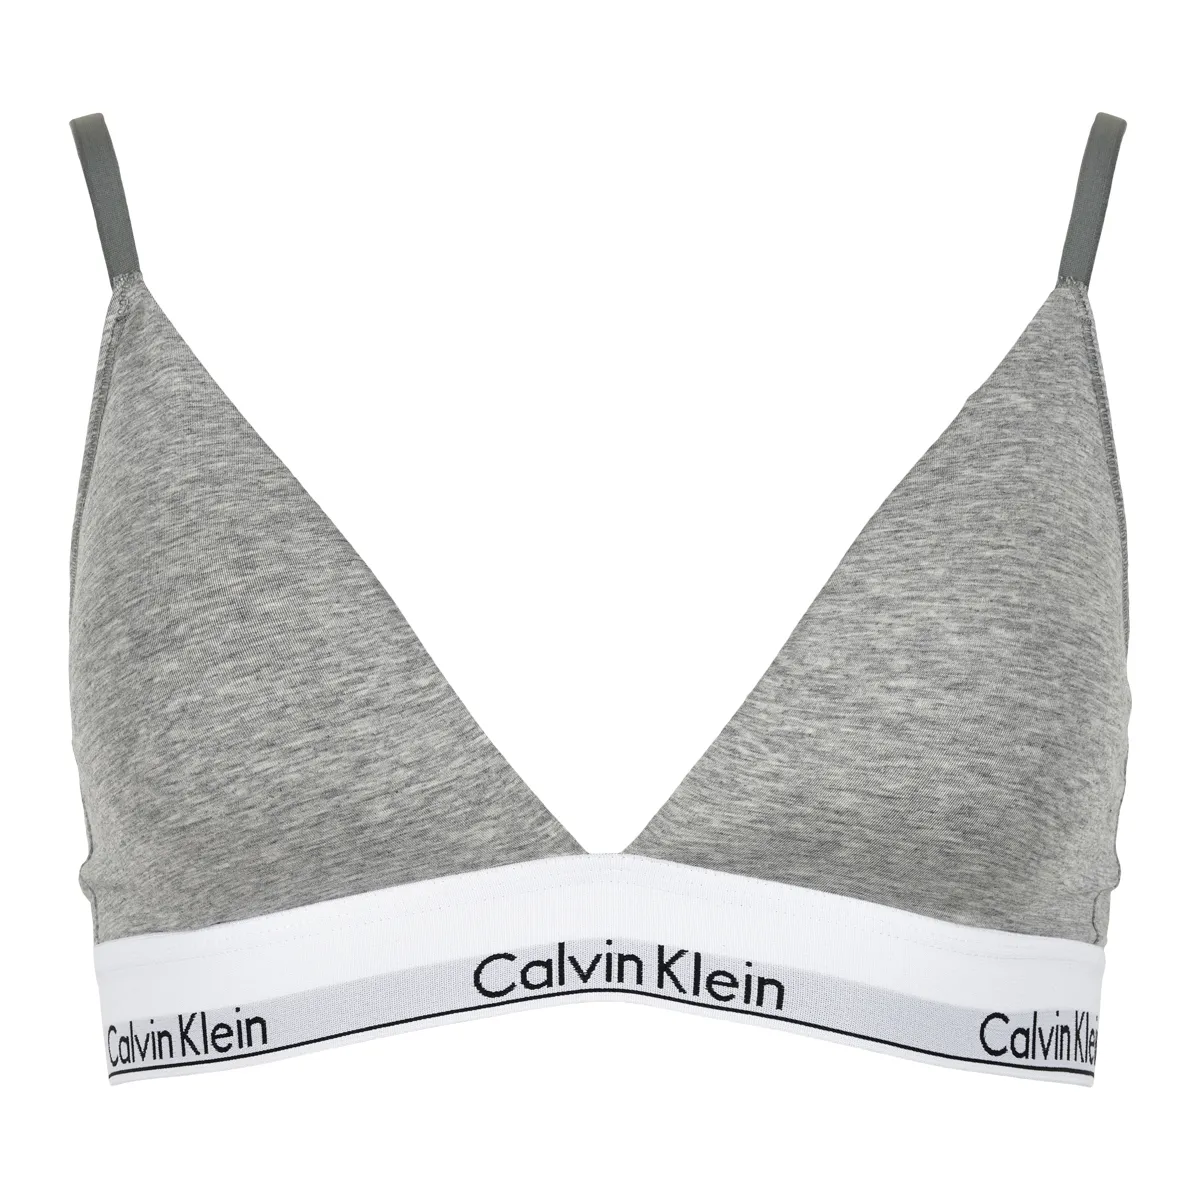 Calvin Klein • CALVIN KLEIN TRIANGLE BH, GRÅ • Pris kr. 210